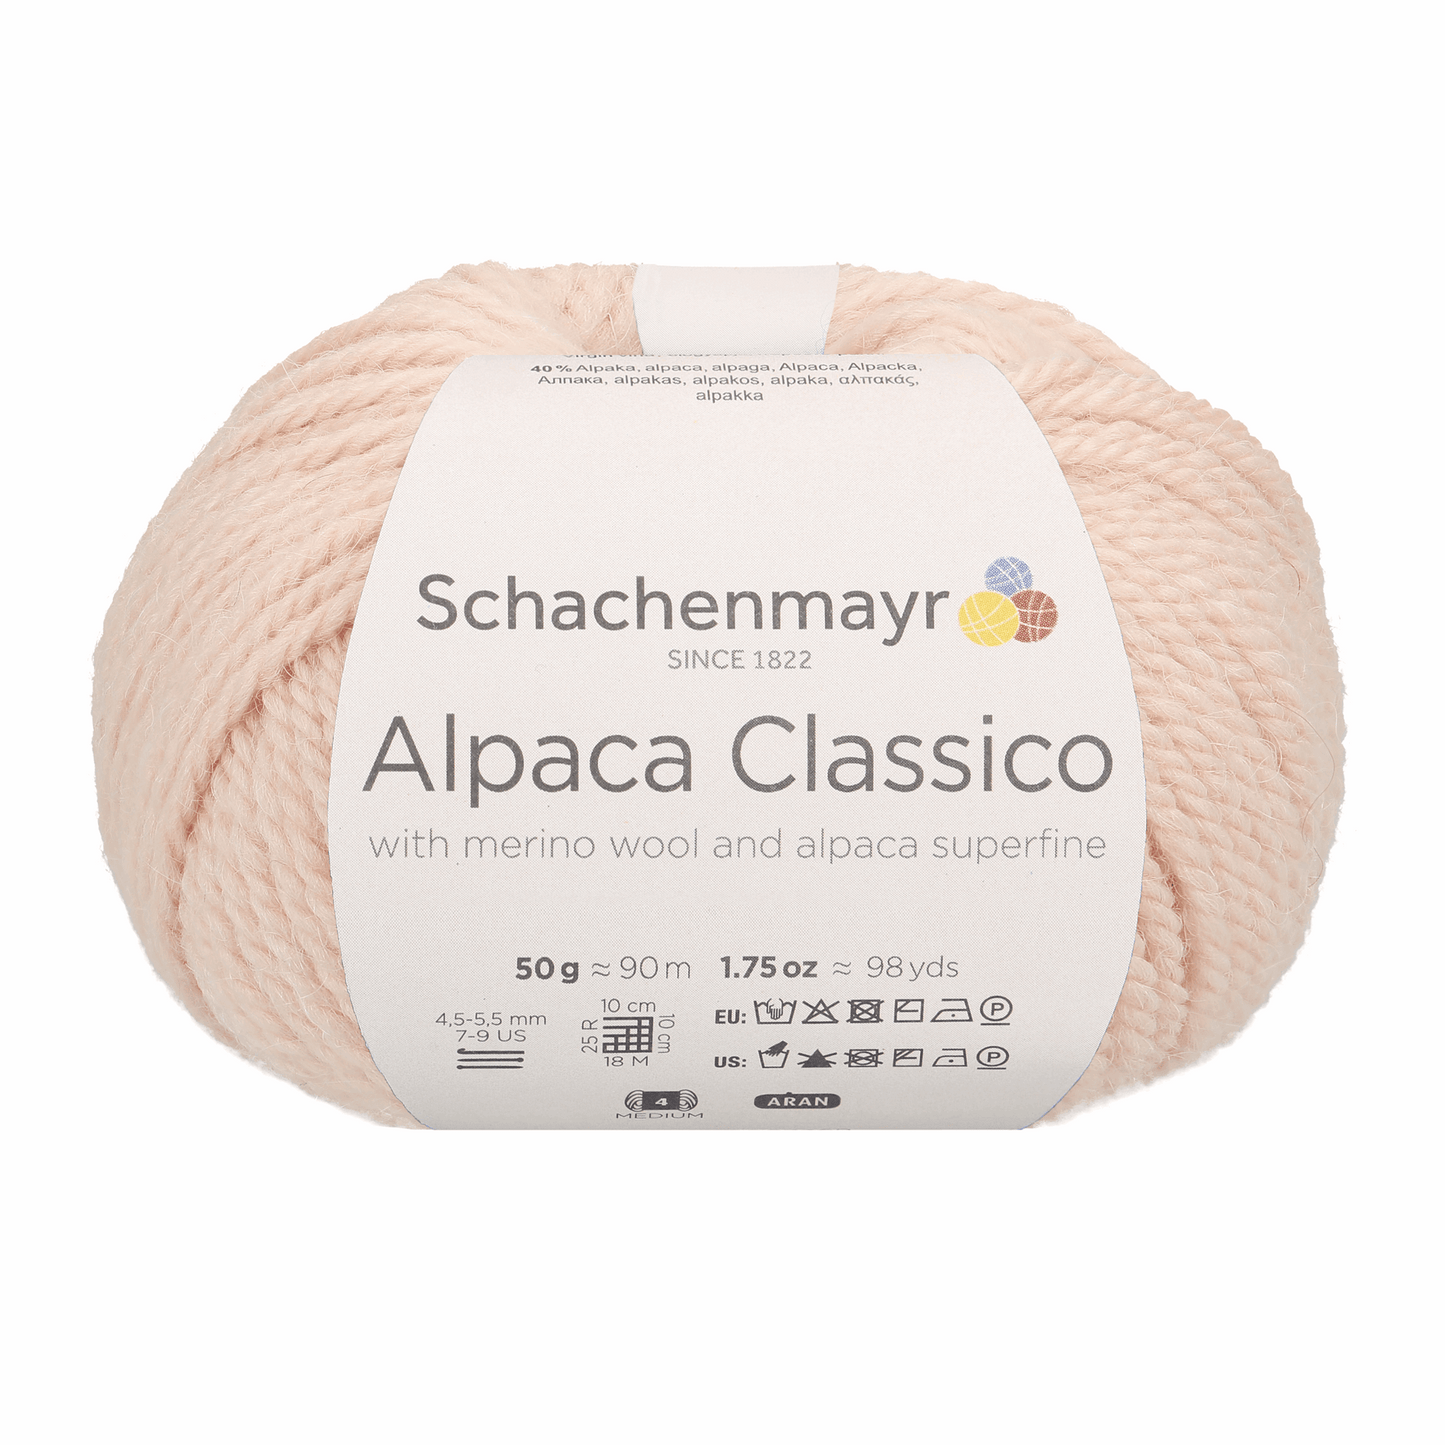 Alpaca classico 50g, 90369, Farbe 23, meliertba